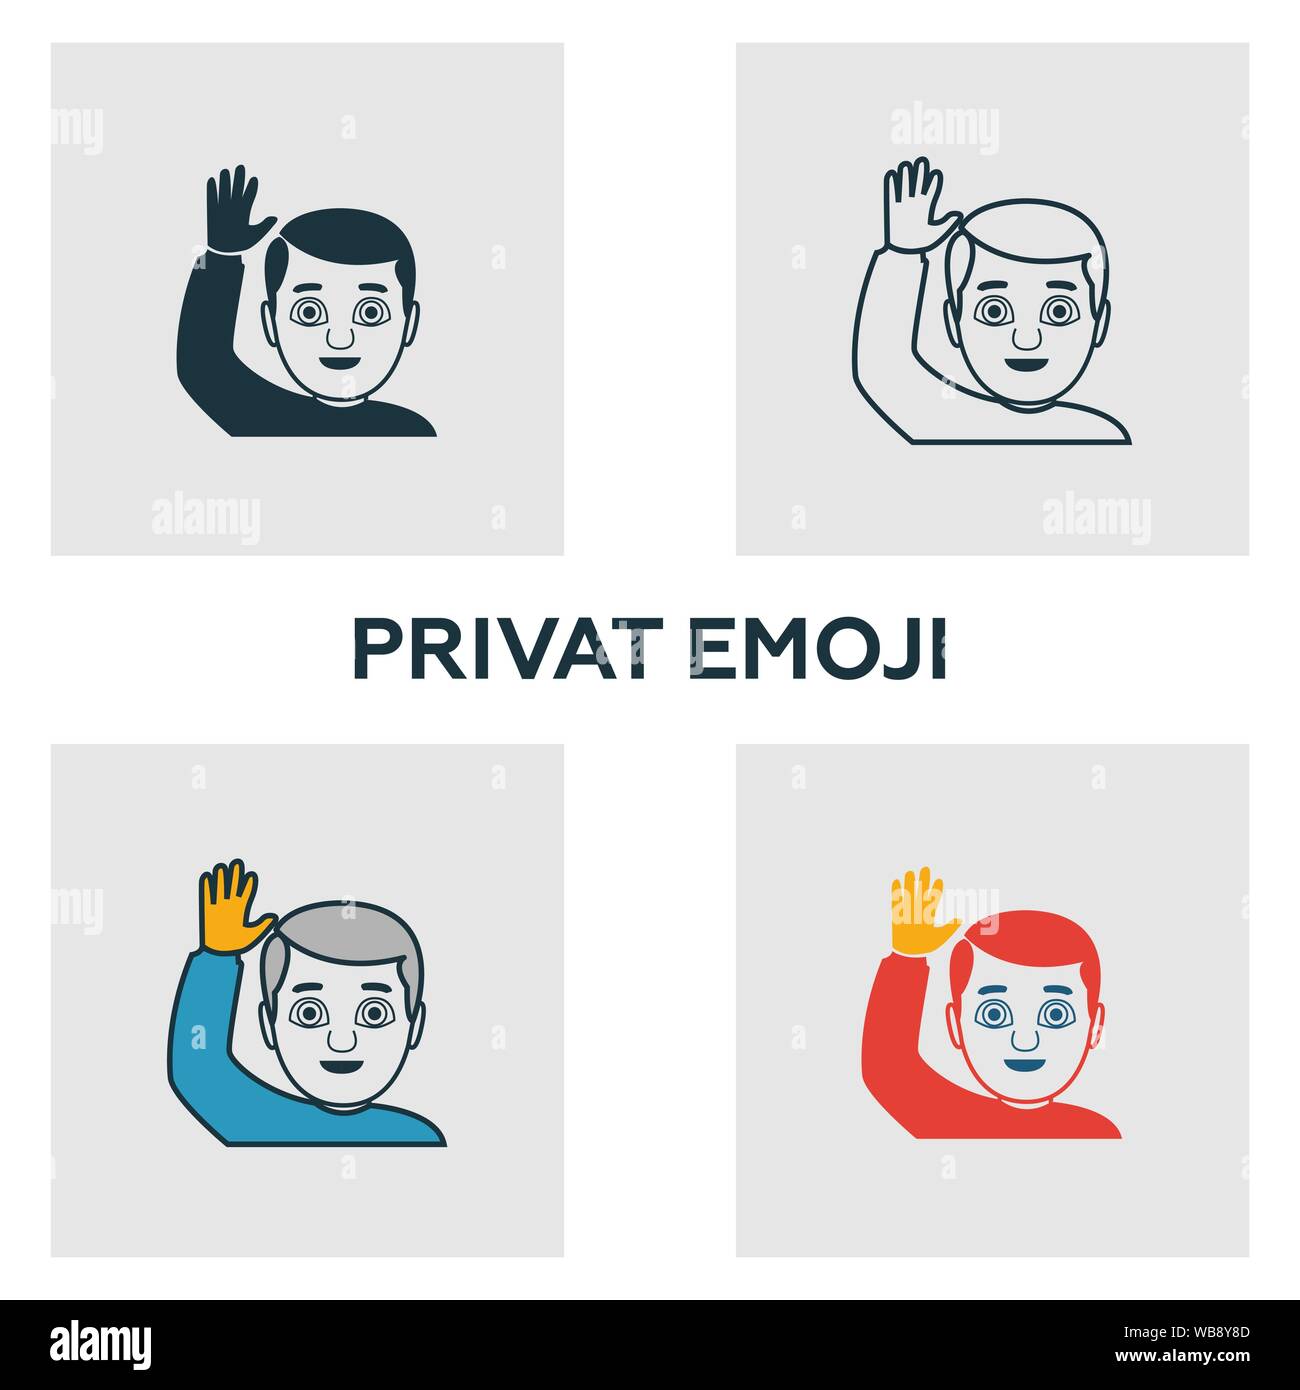 Gli Emoji privato icon set. Quattro elementi in diversi stili dal dispositivo audiovisivo raccolta di icone. Creative privato icone emoji riempito, contorno, colorati Illustrazione Vettoriale